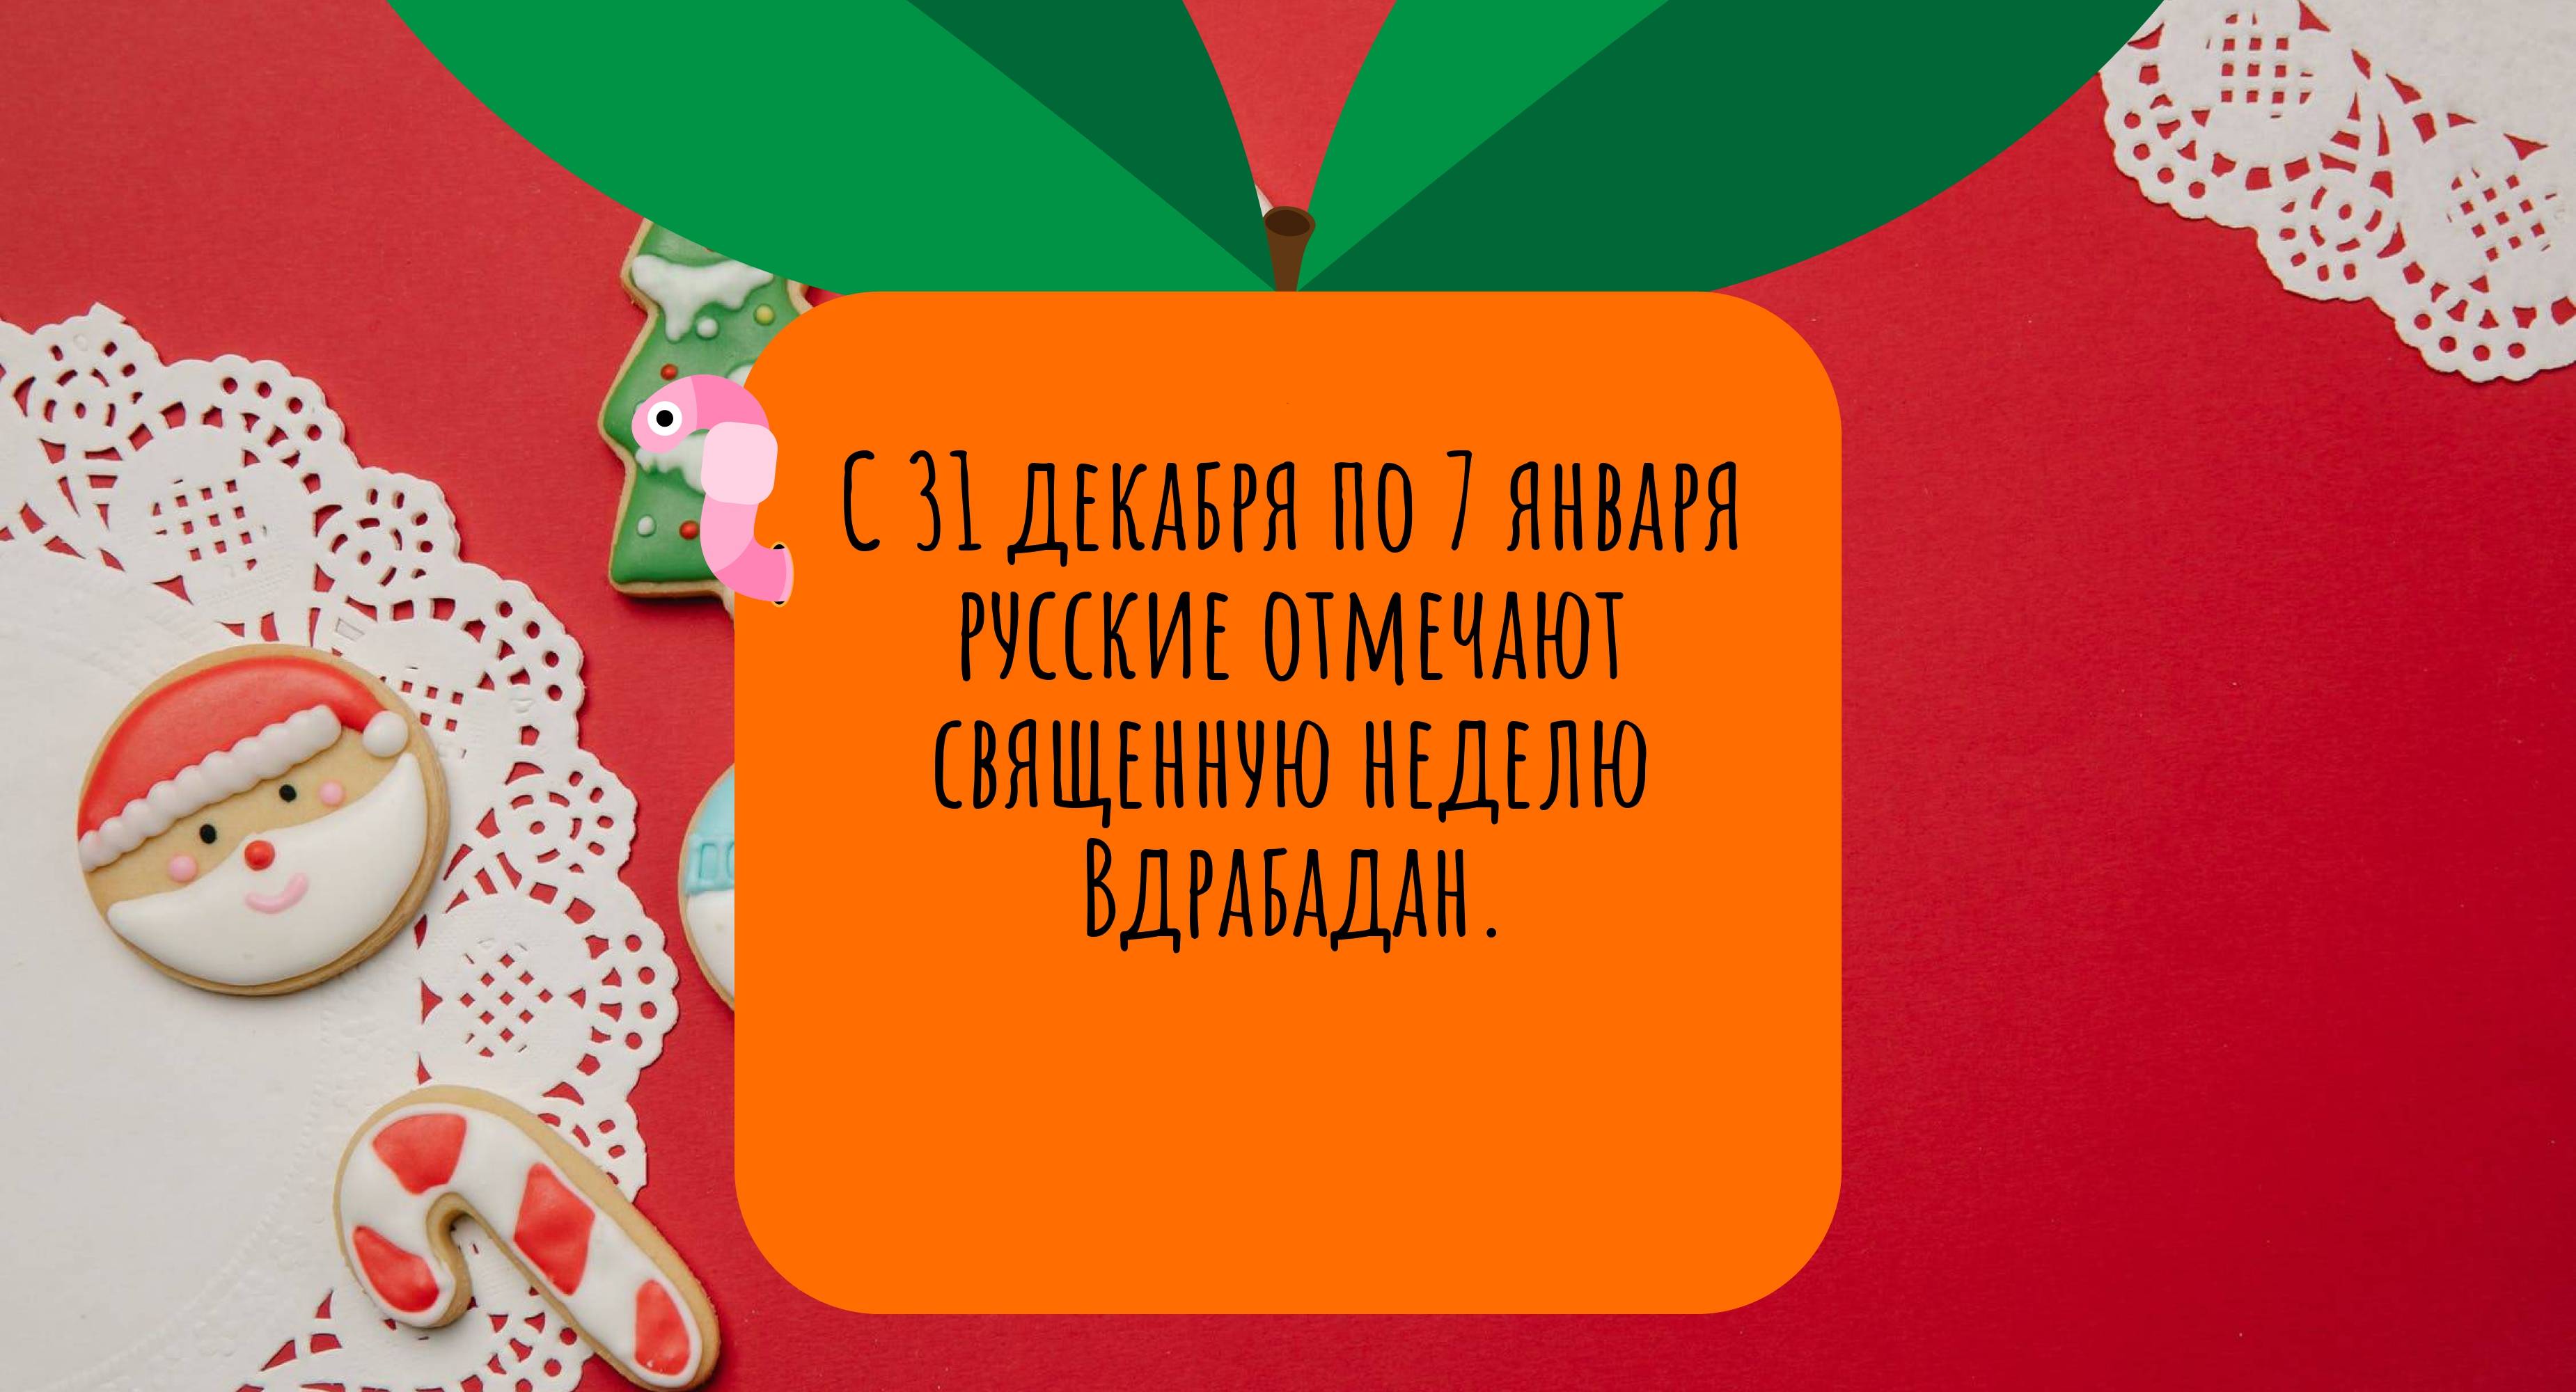 С 31 декабря по 7 января русские отмечают священную неделю Вдрабадан.